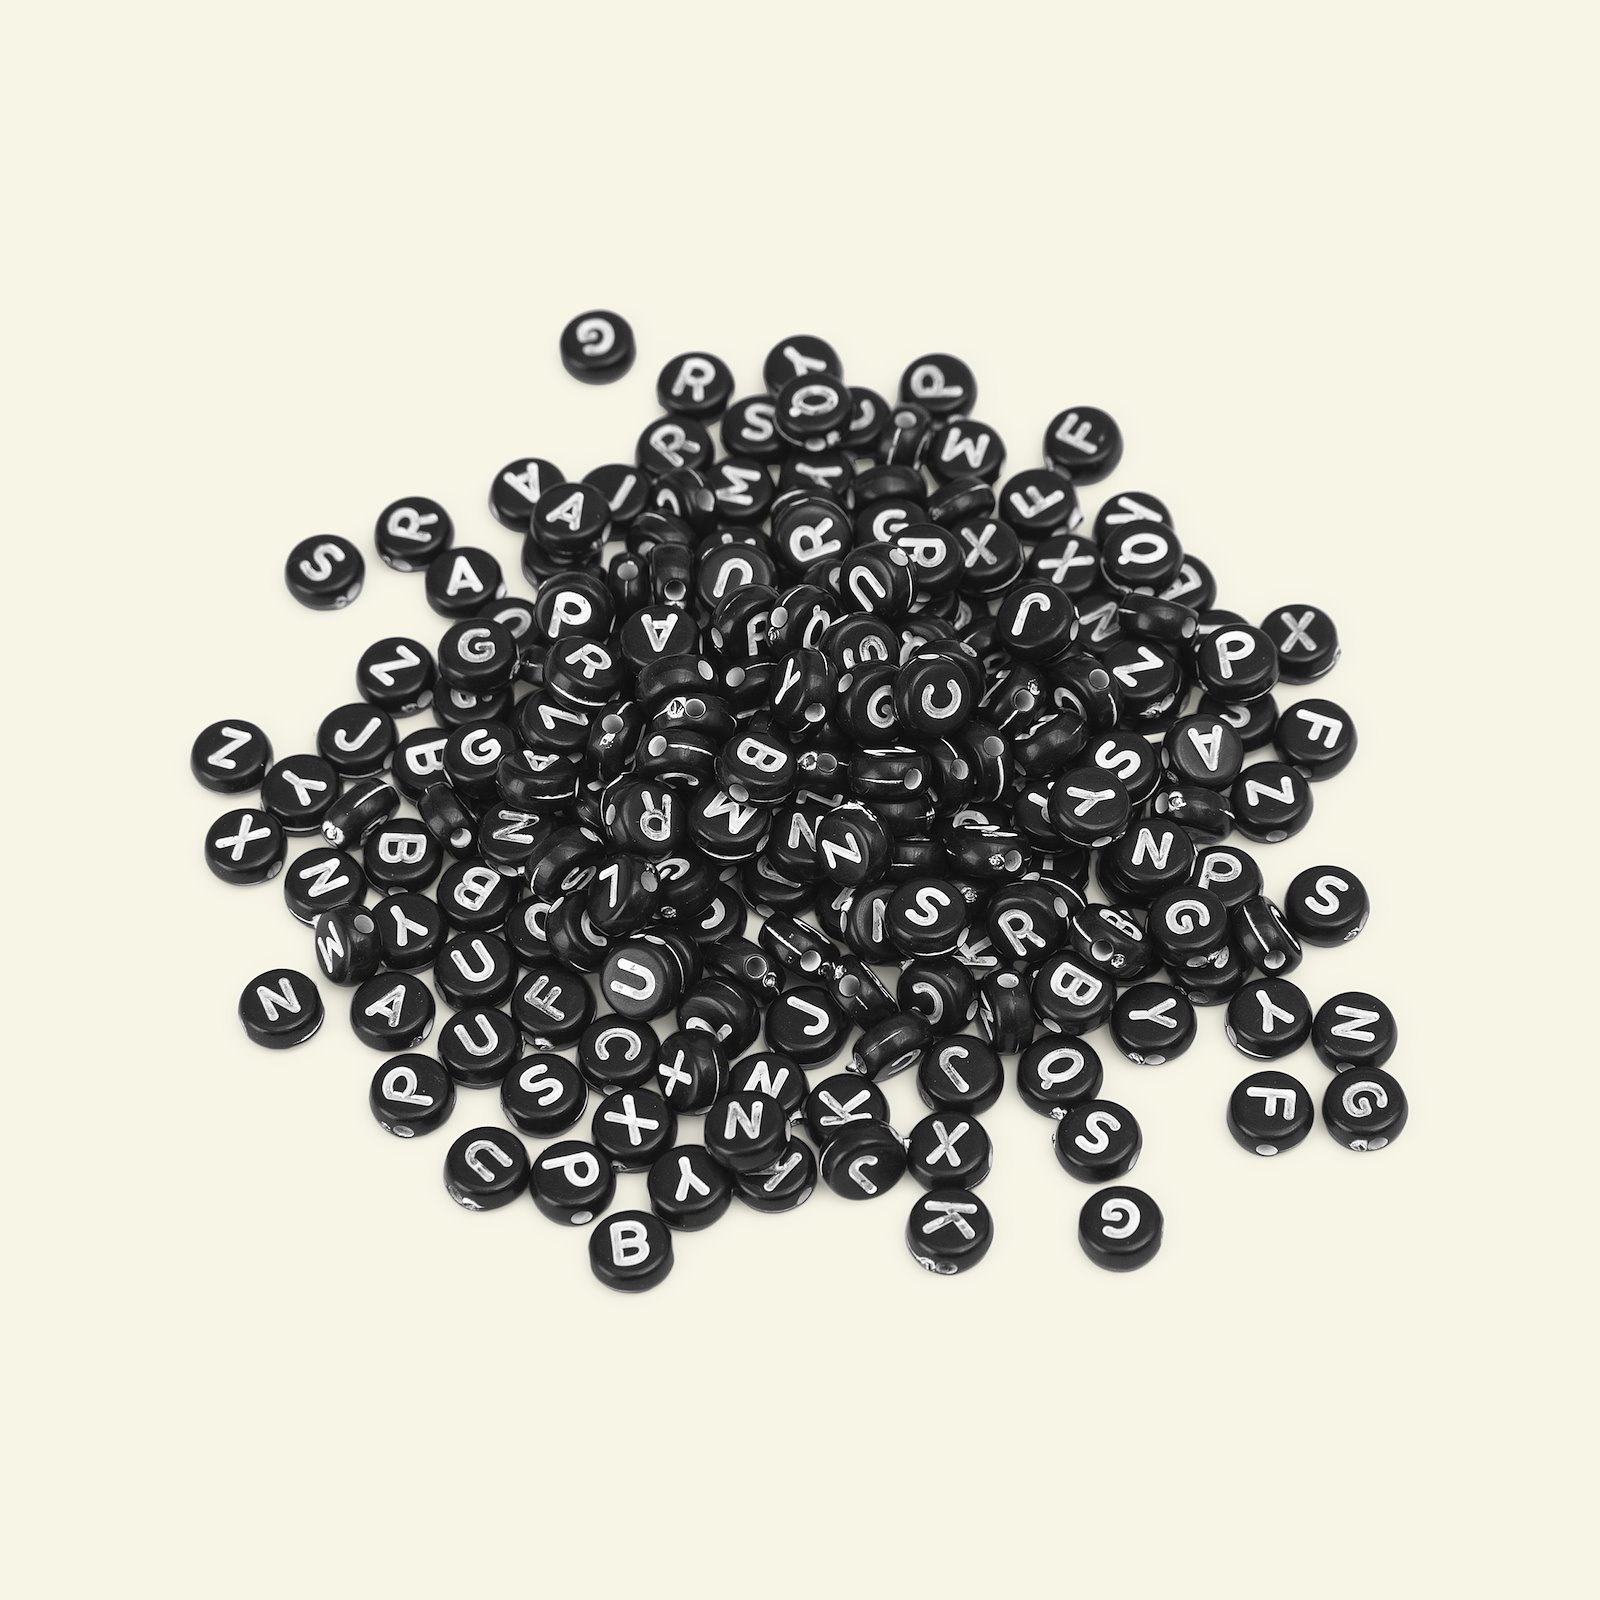 Pärla bokstäver 7mm svart/vit 25g/220st 47618_pack